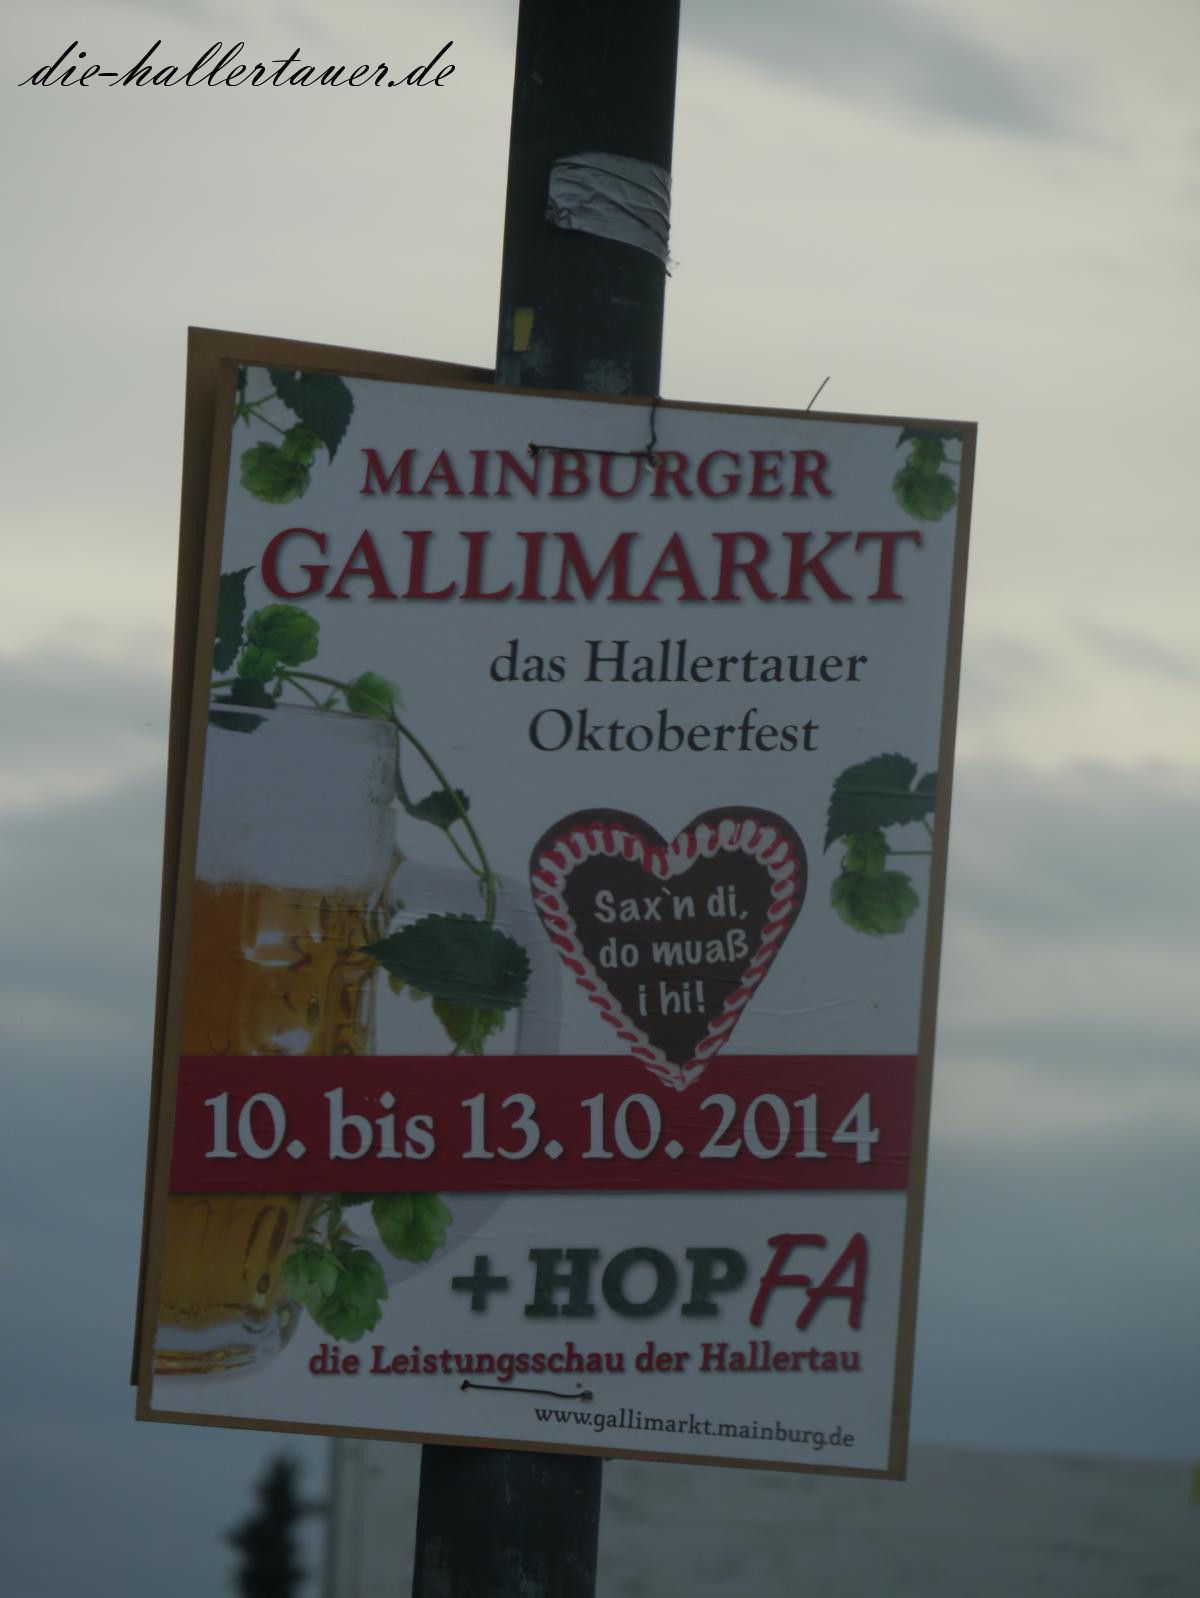 Mainburger Gallimarkt